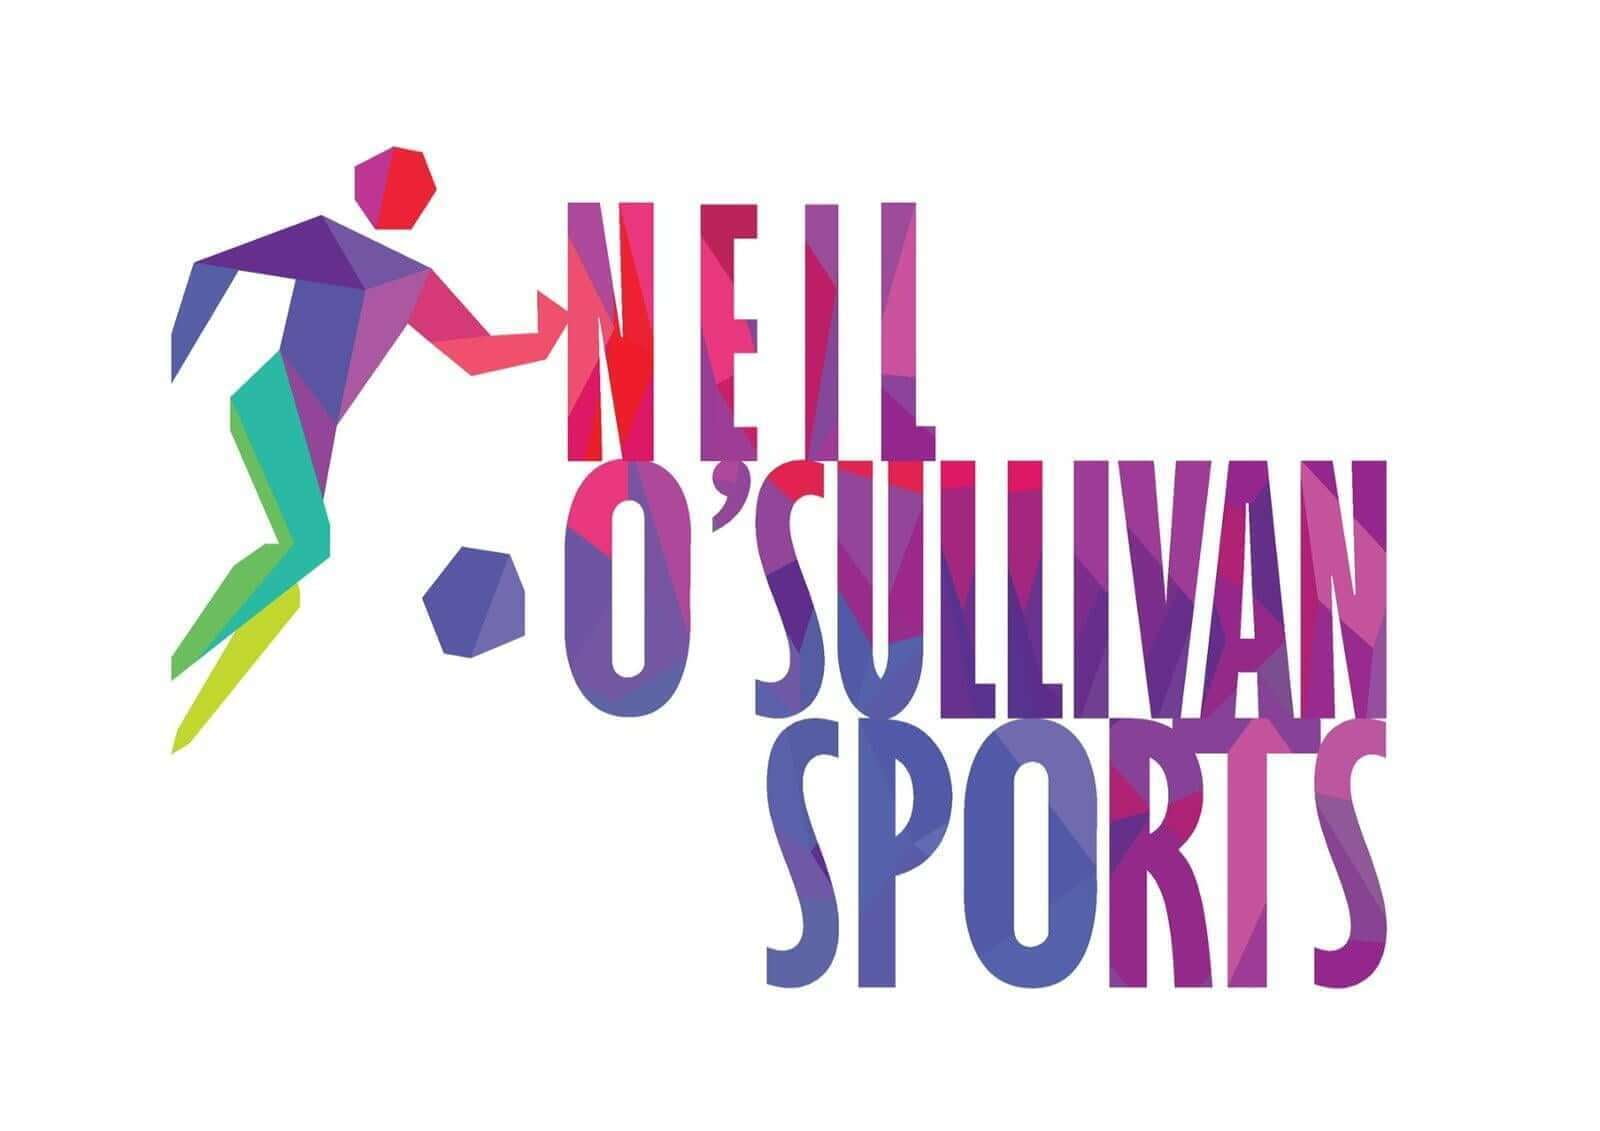 Neil O'Sullivan Sports